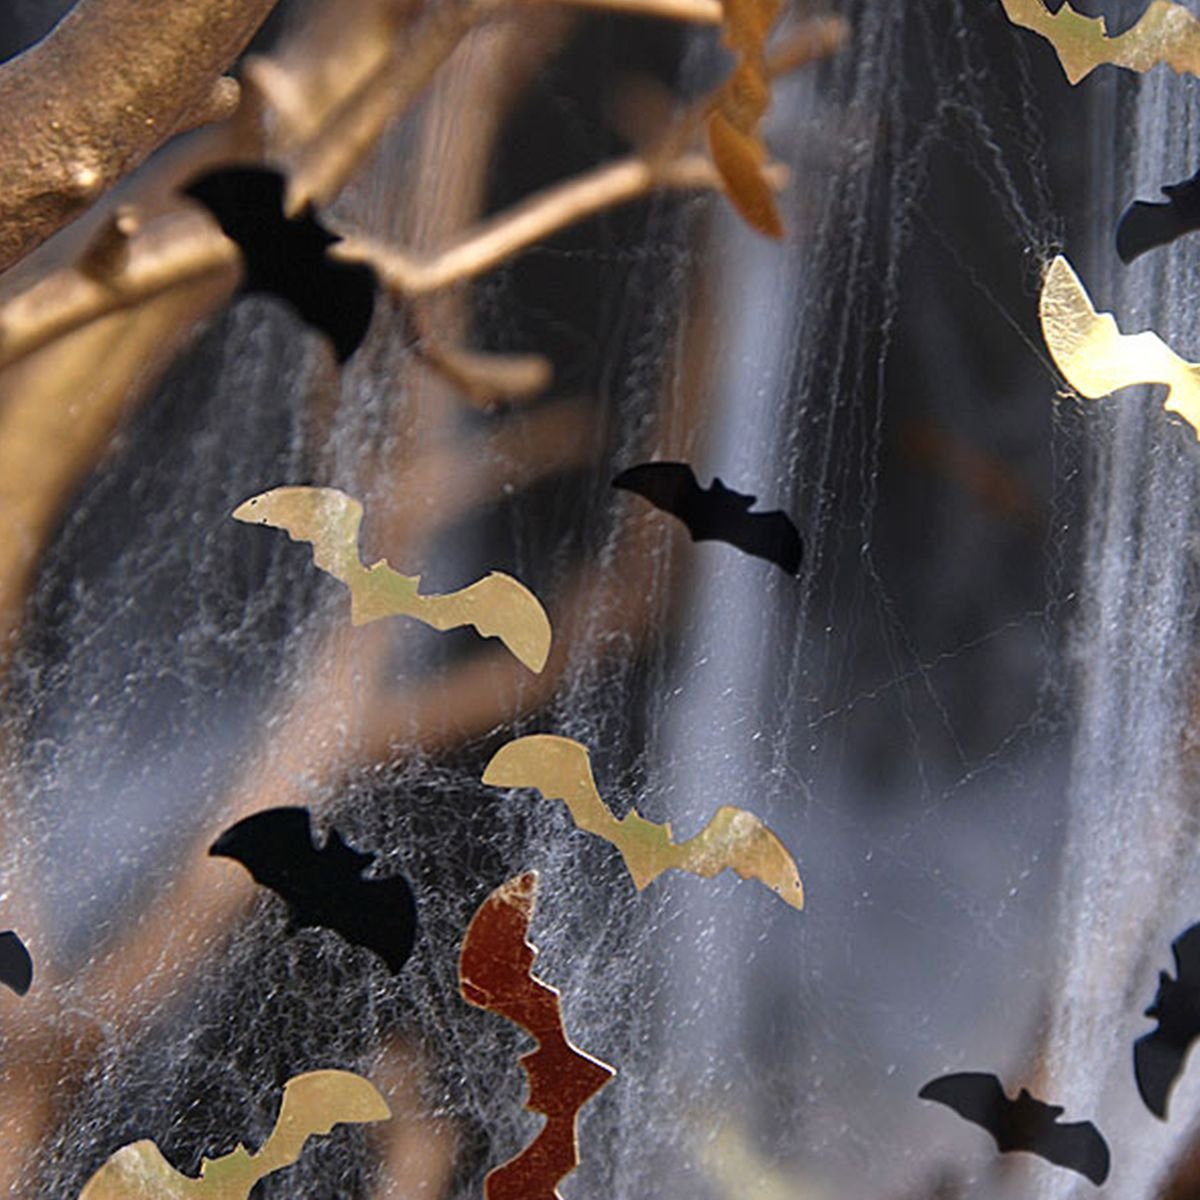 XXL "House Einweggeschirr-Set Spider Partydeko-Set of Witch" Halloween the partydeco